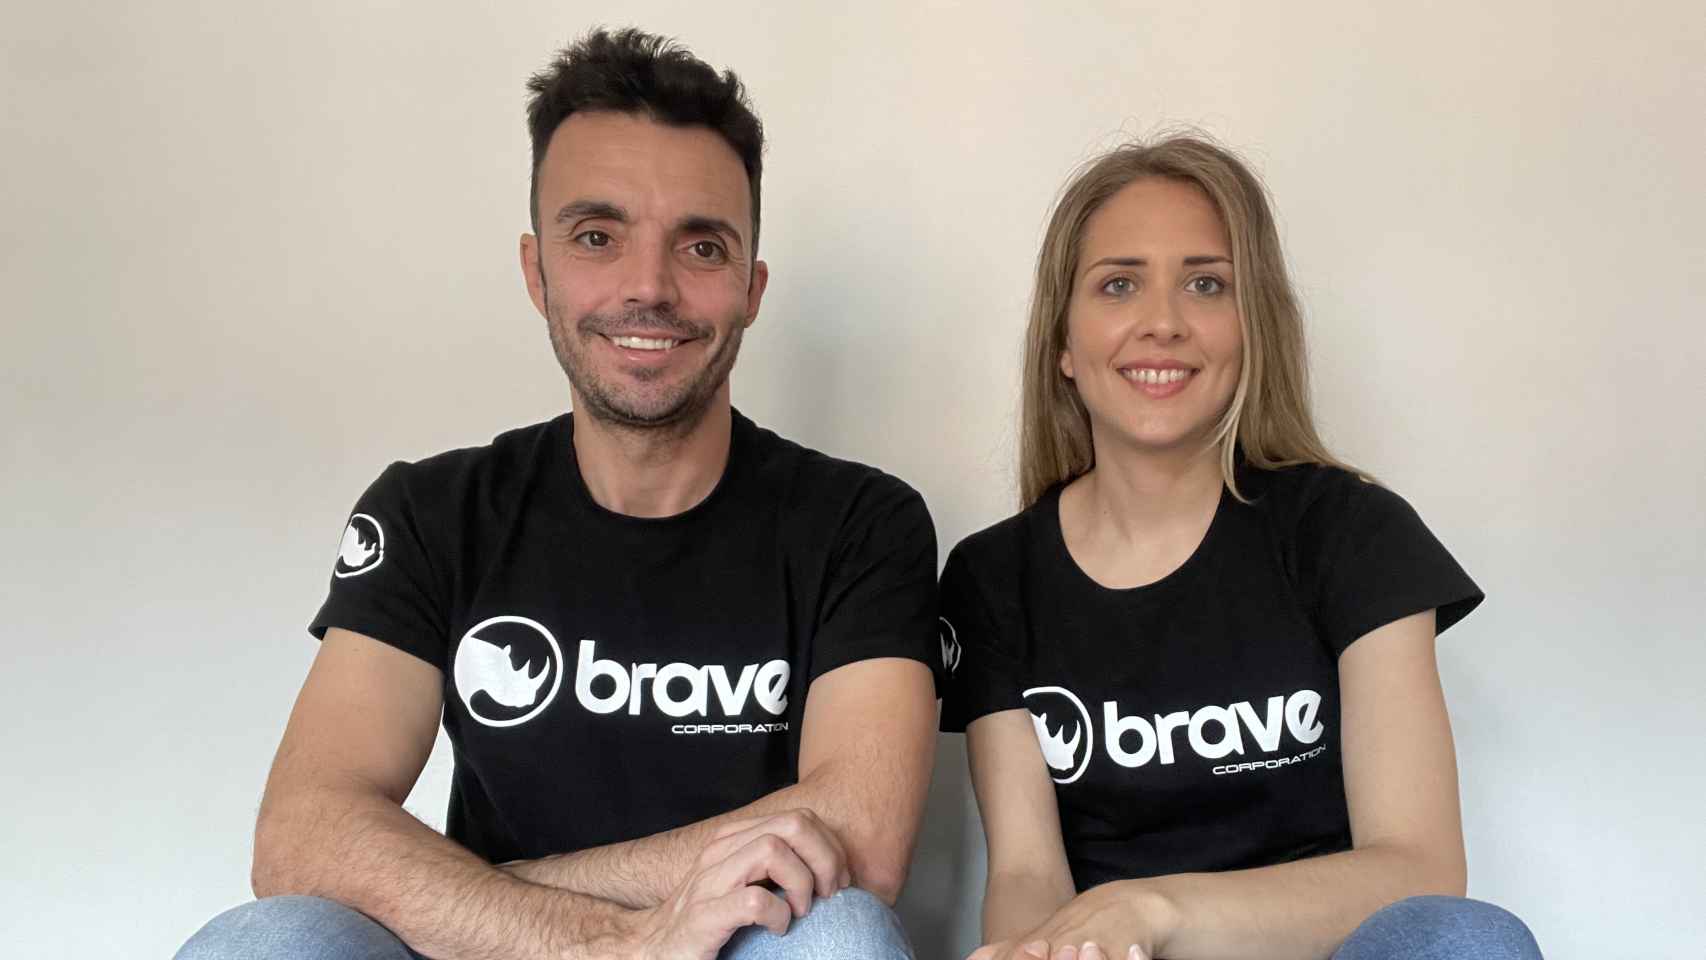 Javier Gutiérrez (CEO) y Saioa Arrizabalaga (CMO) de Brave Corporation.